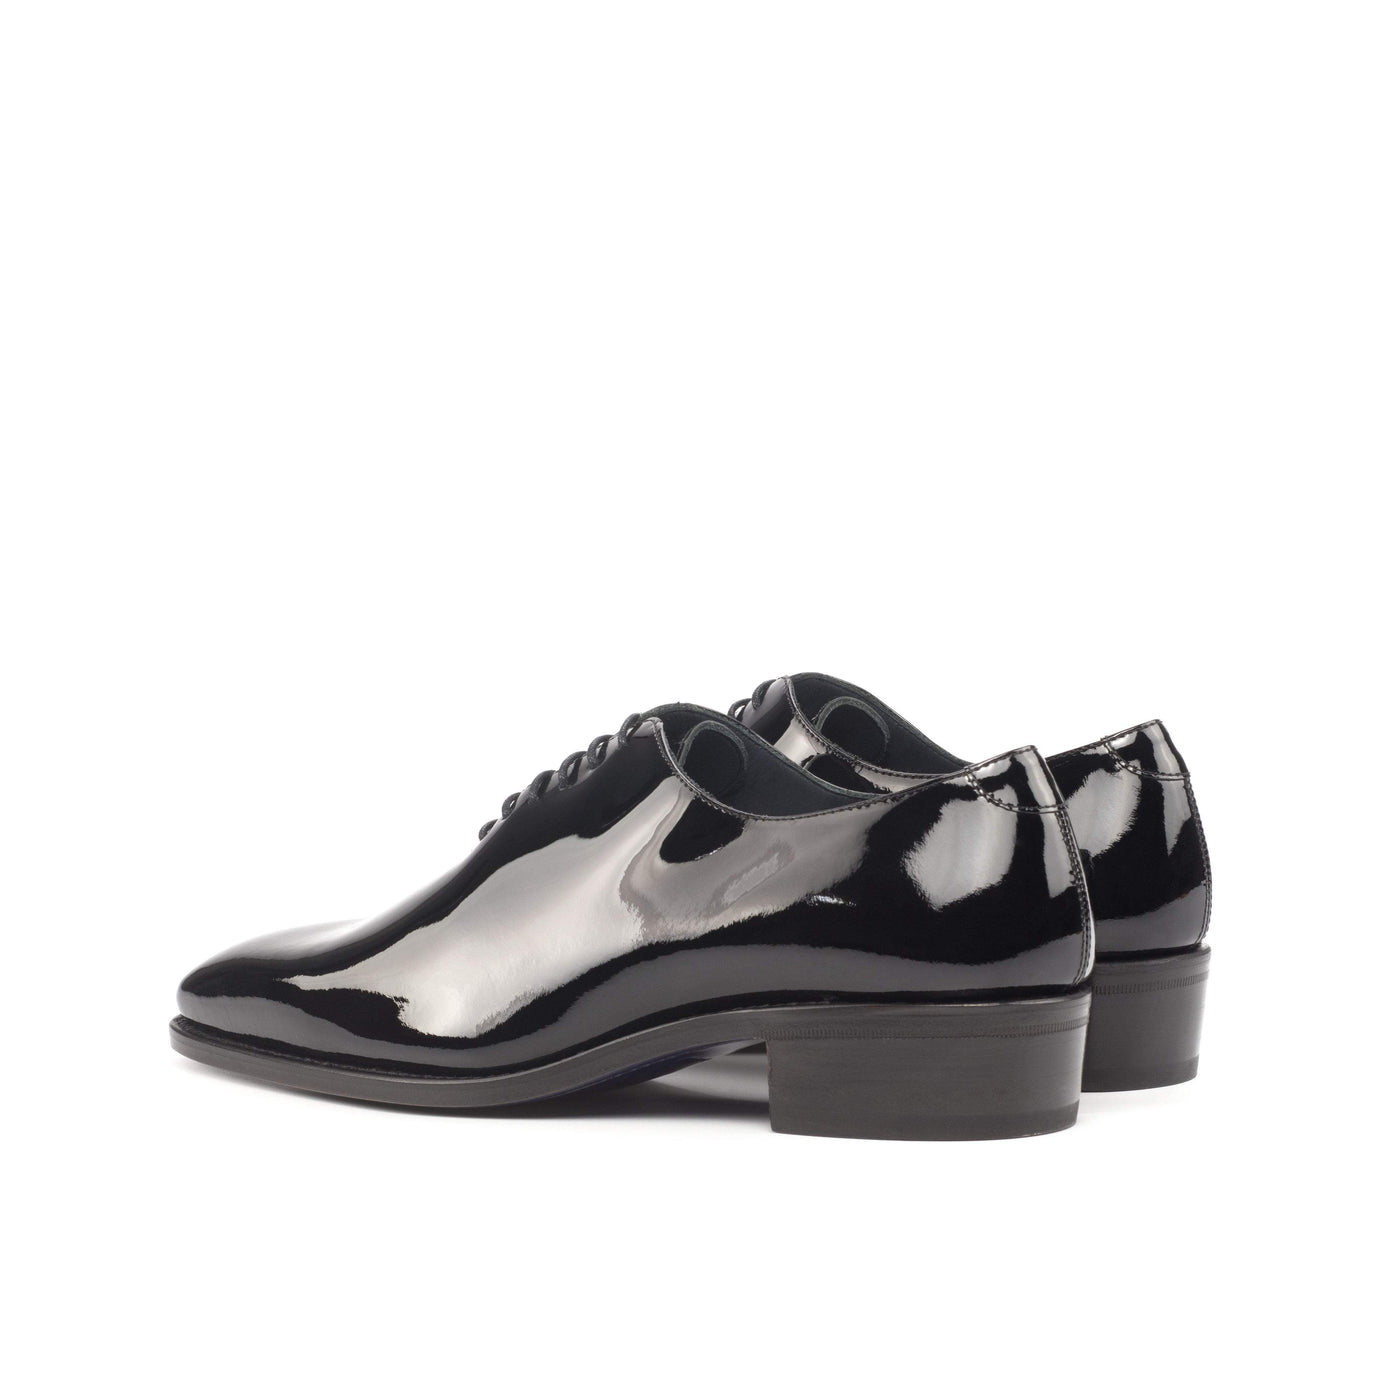 Men's Wholecut Shoes Leather Goodyear Welt Black 4571 4- MERRIMIUM